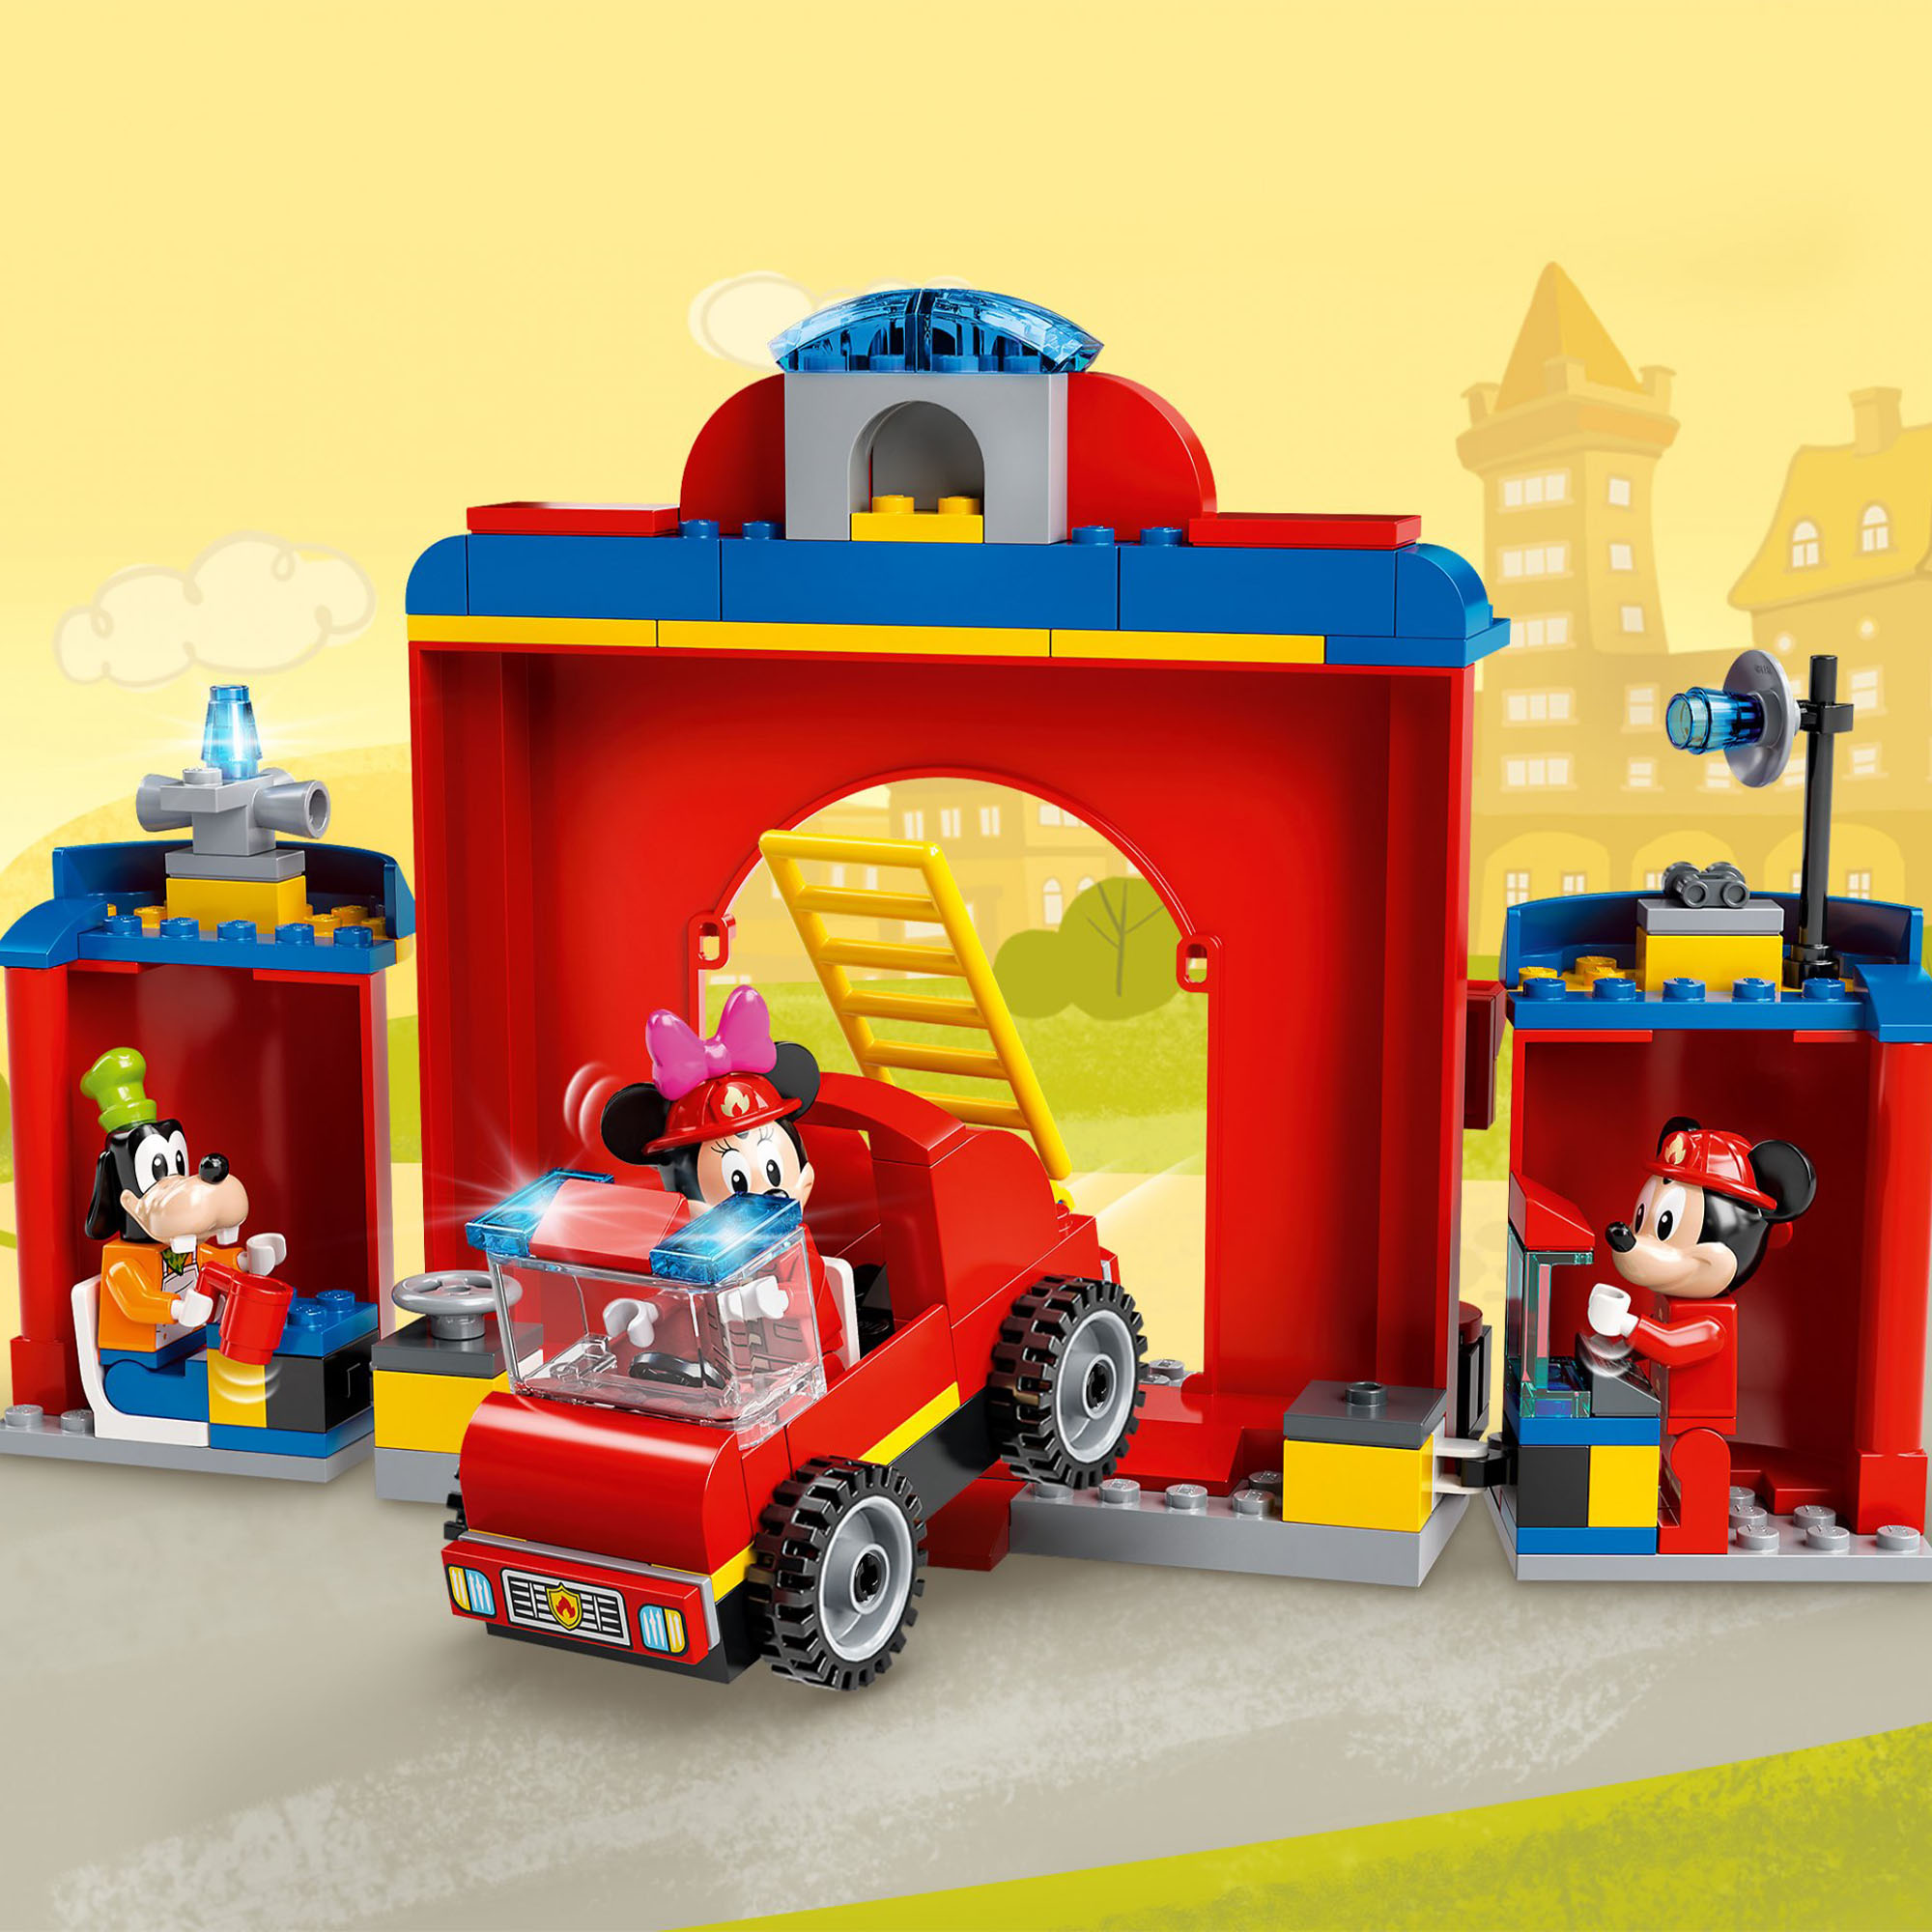 LEGO Disney Mickey and Friends Autopompa e Caserma di Topolino e i Suoi Amici co 10776, , large